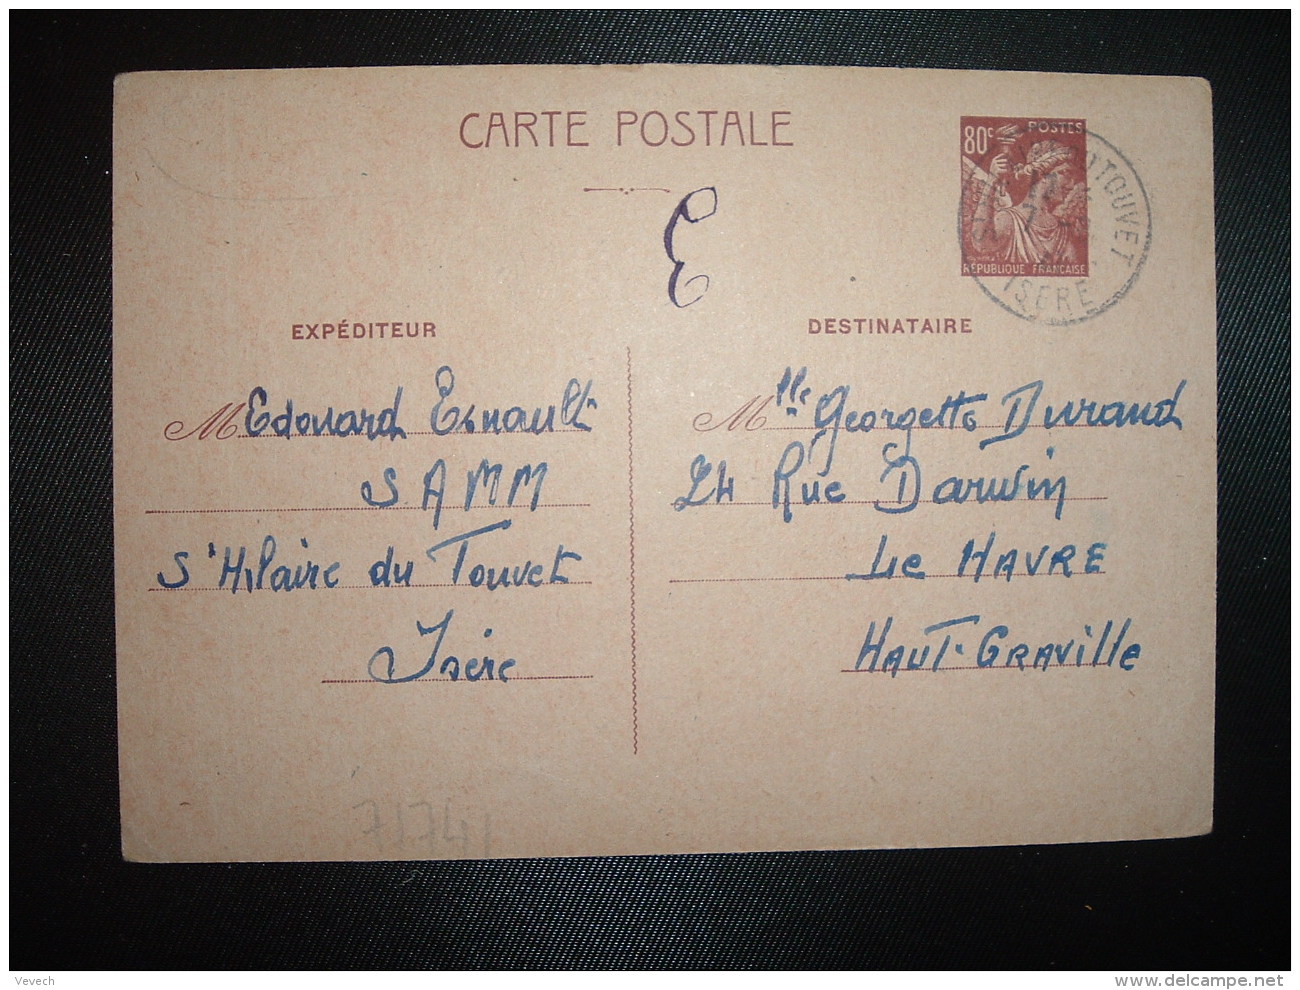 CPE IRIS 80c OBL.7-8 41 ST HILAIRE DU TOUVET ISERE (38) Edouard ESNAULT à Georgette DURANT LE HAVRE (76) - Guerre De 1939-45